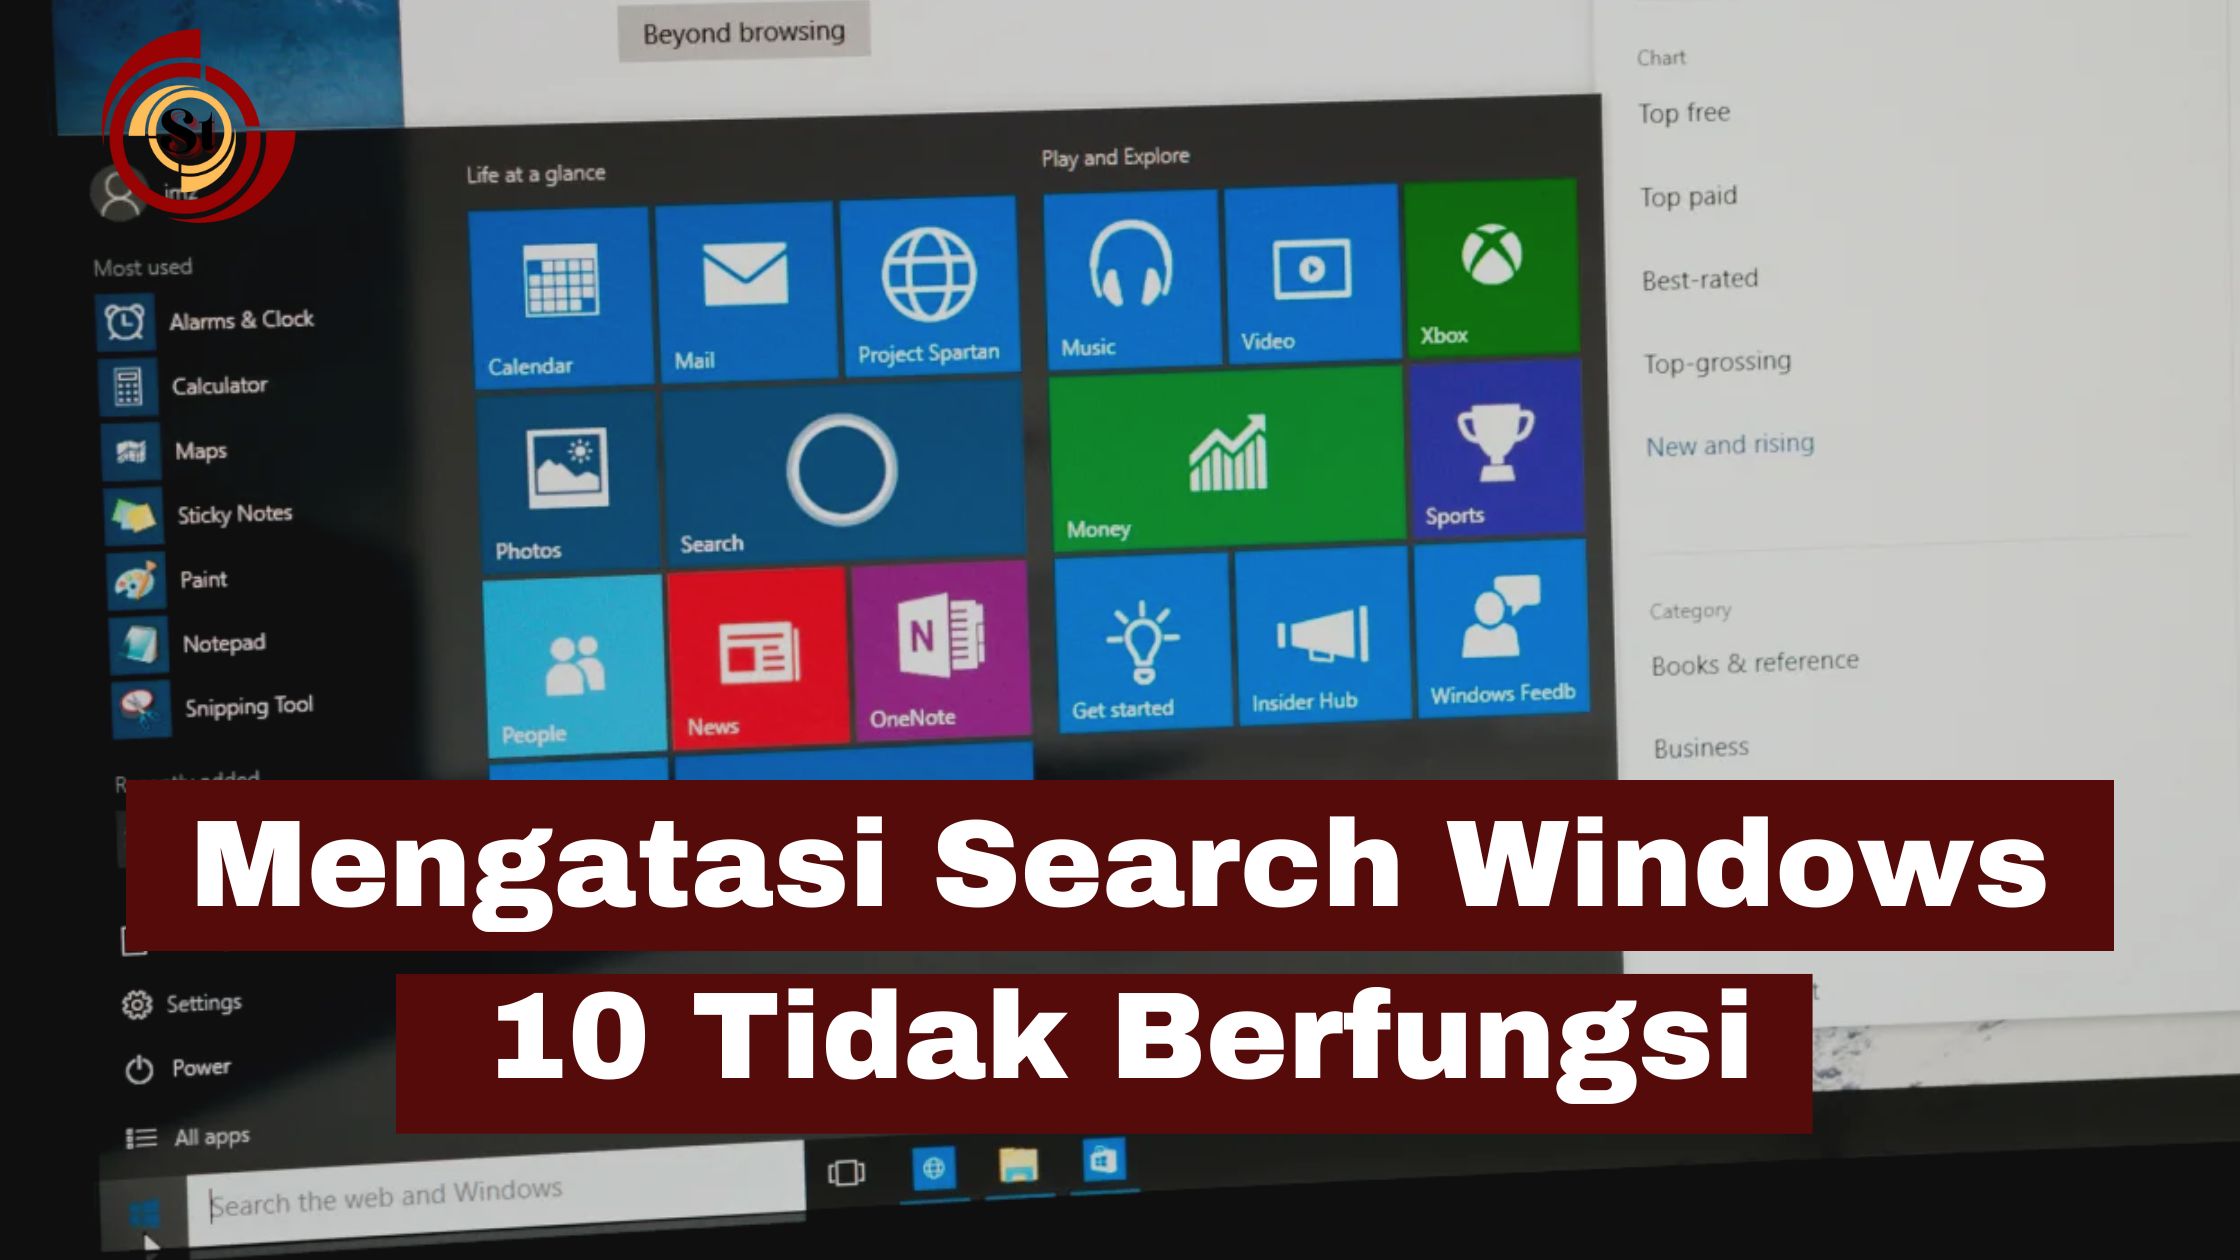 Search Windows 10 Error